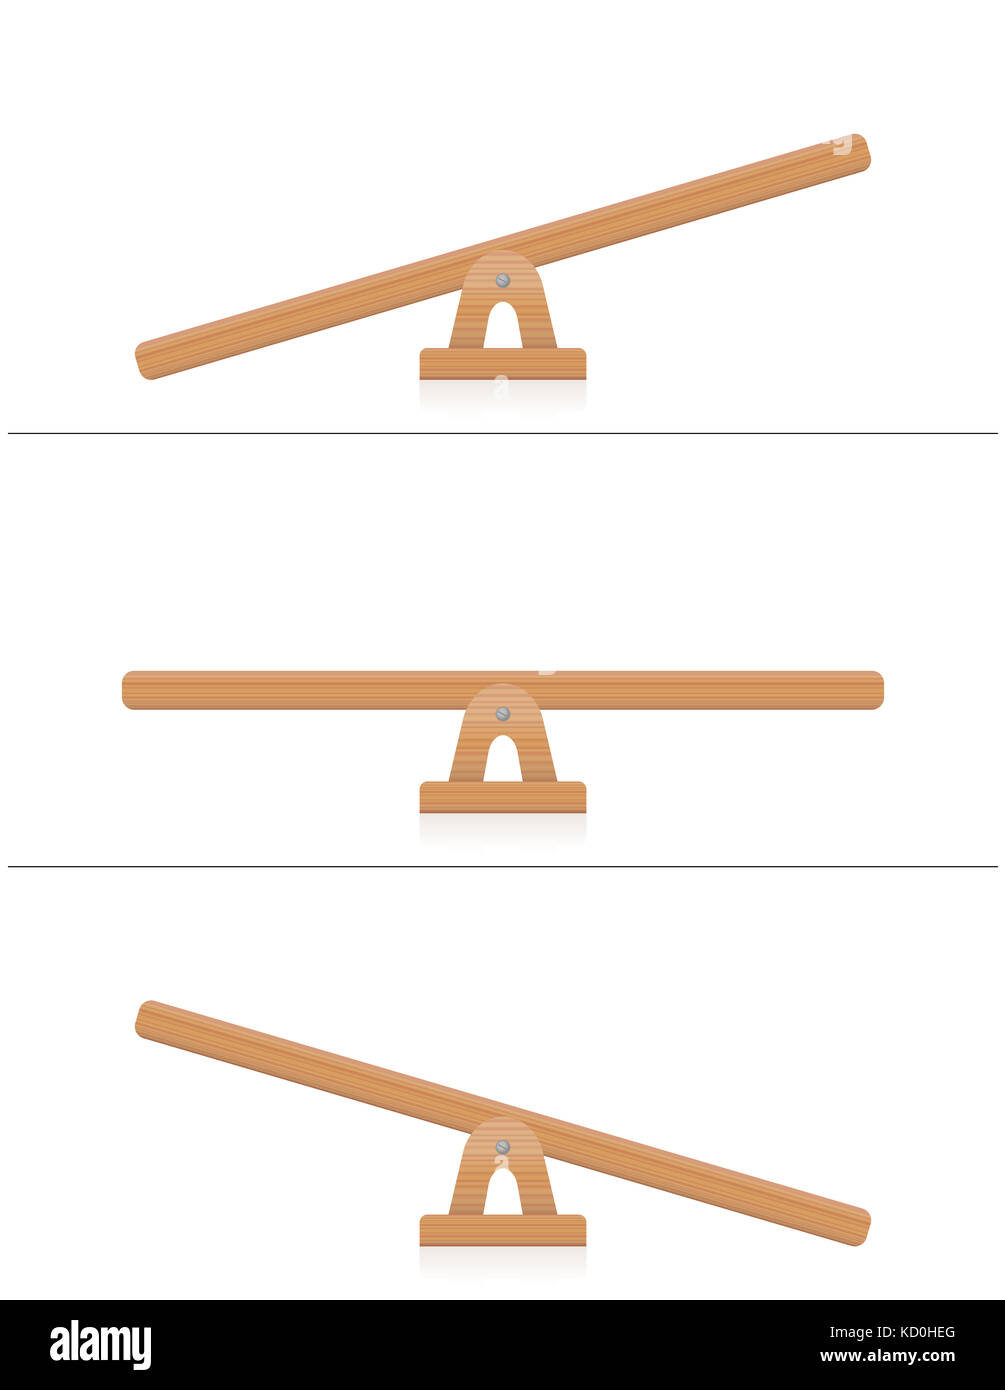 Balancín o balanza de madera - balanceado y no balanceado, igualdad y desigualdad weightiness - Ilustración sobre fondo blanco. Foto de stock